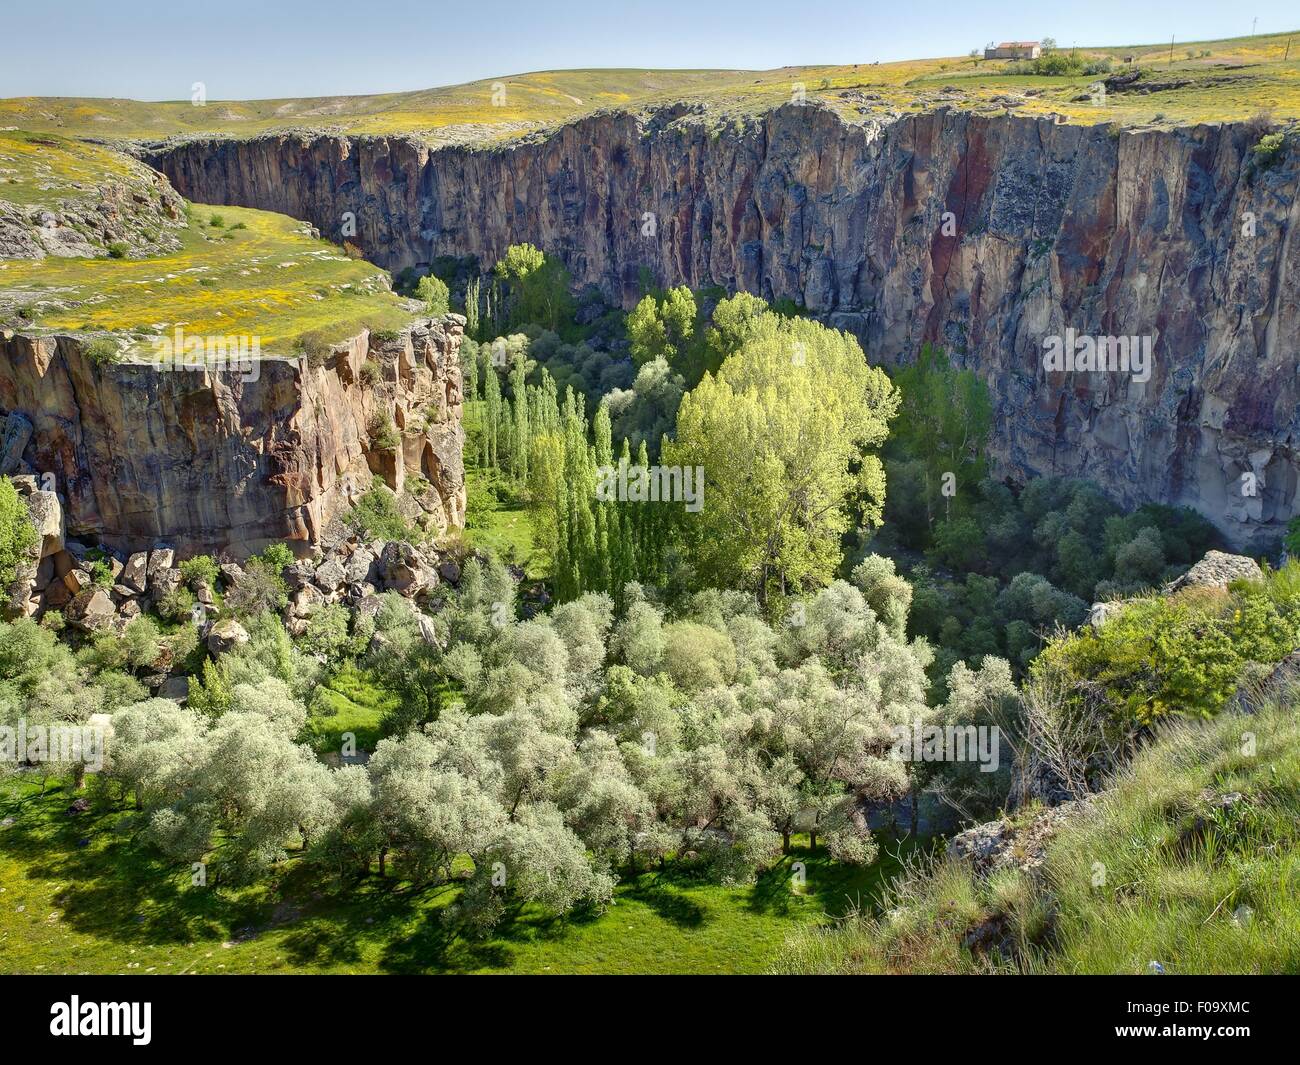 Ihlara Valley in Anatolia, Turkey Stock Photo